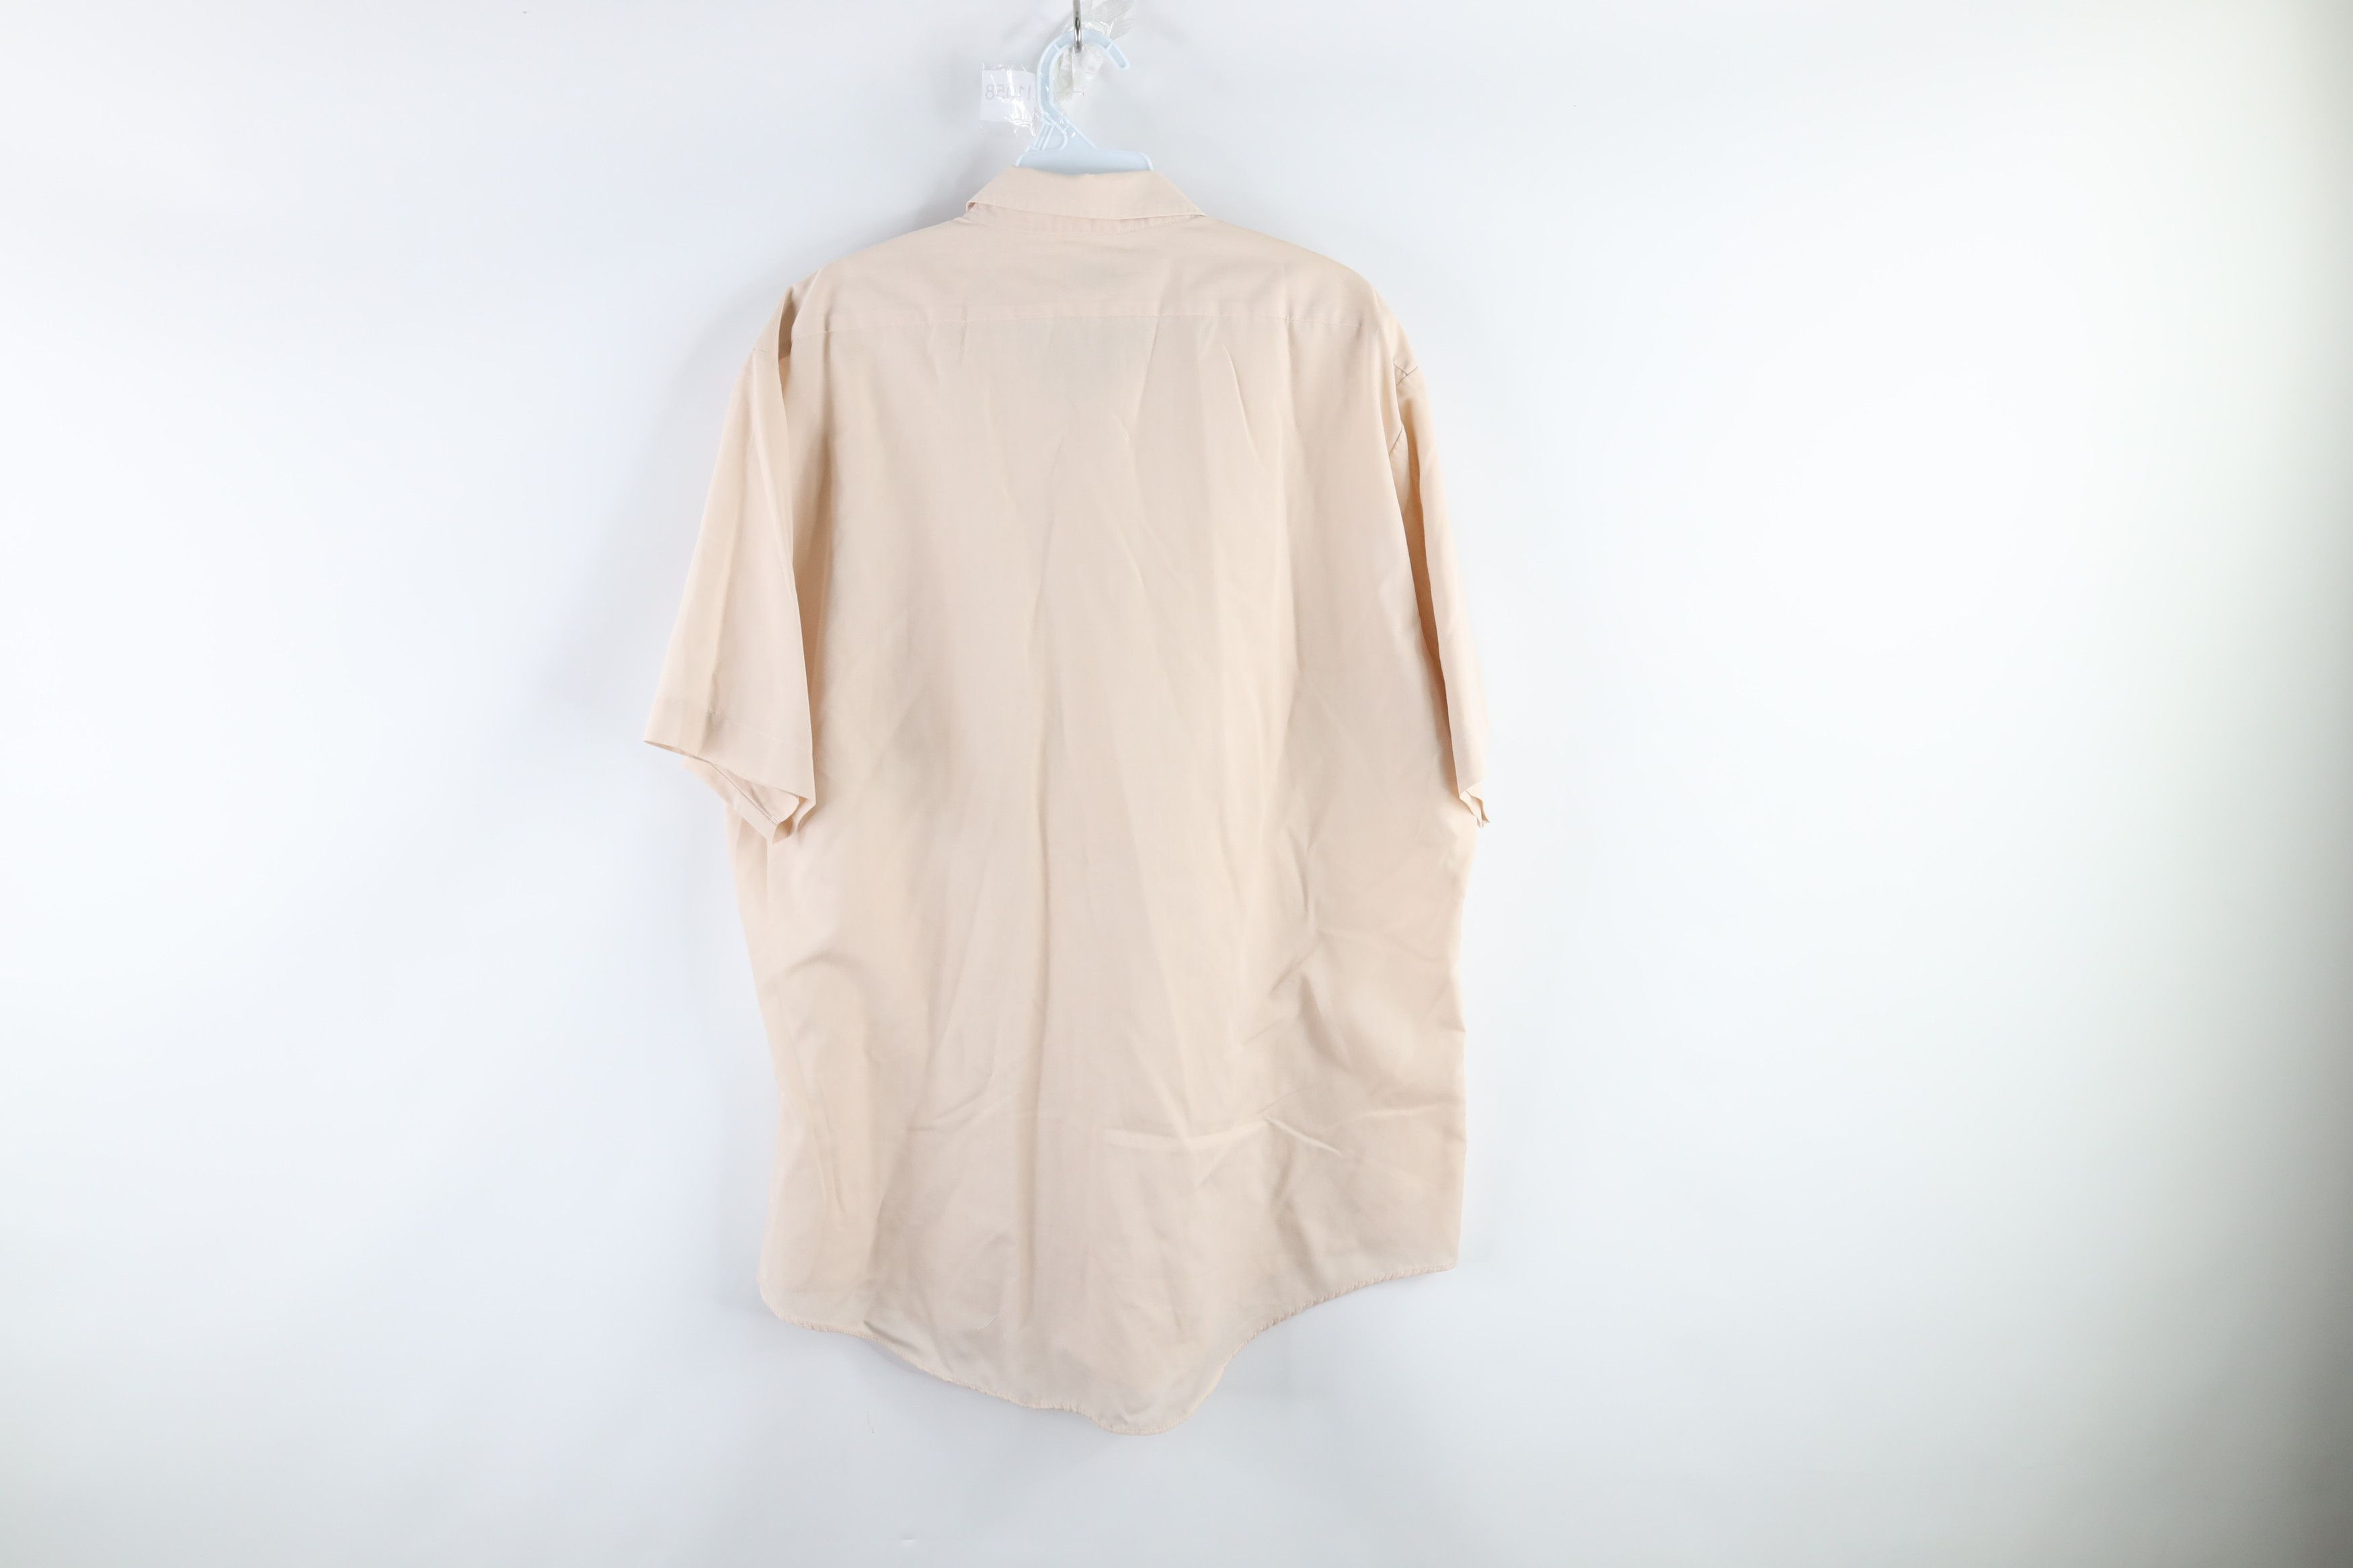 Vintage Vintage 70s Short Sleeve Mechanic Button Shirt Beige Tan Size US L / EU 52-54 / 3 - 5 Thumbnail